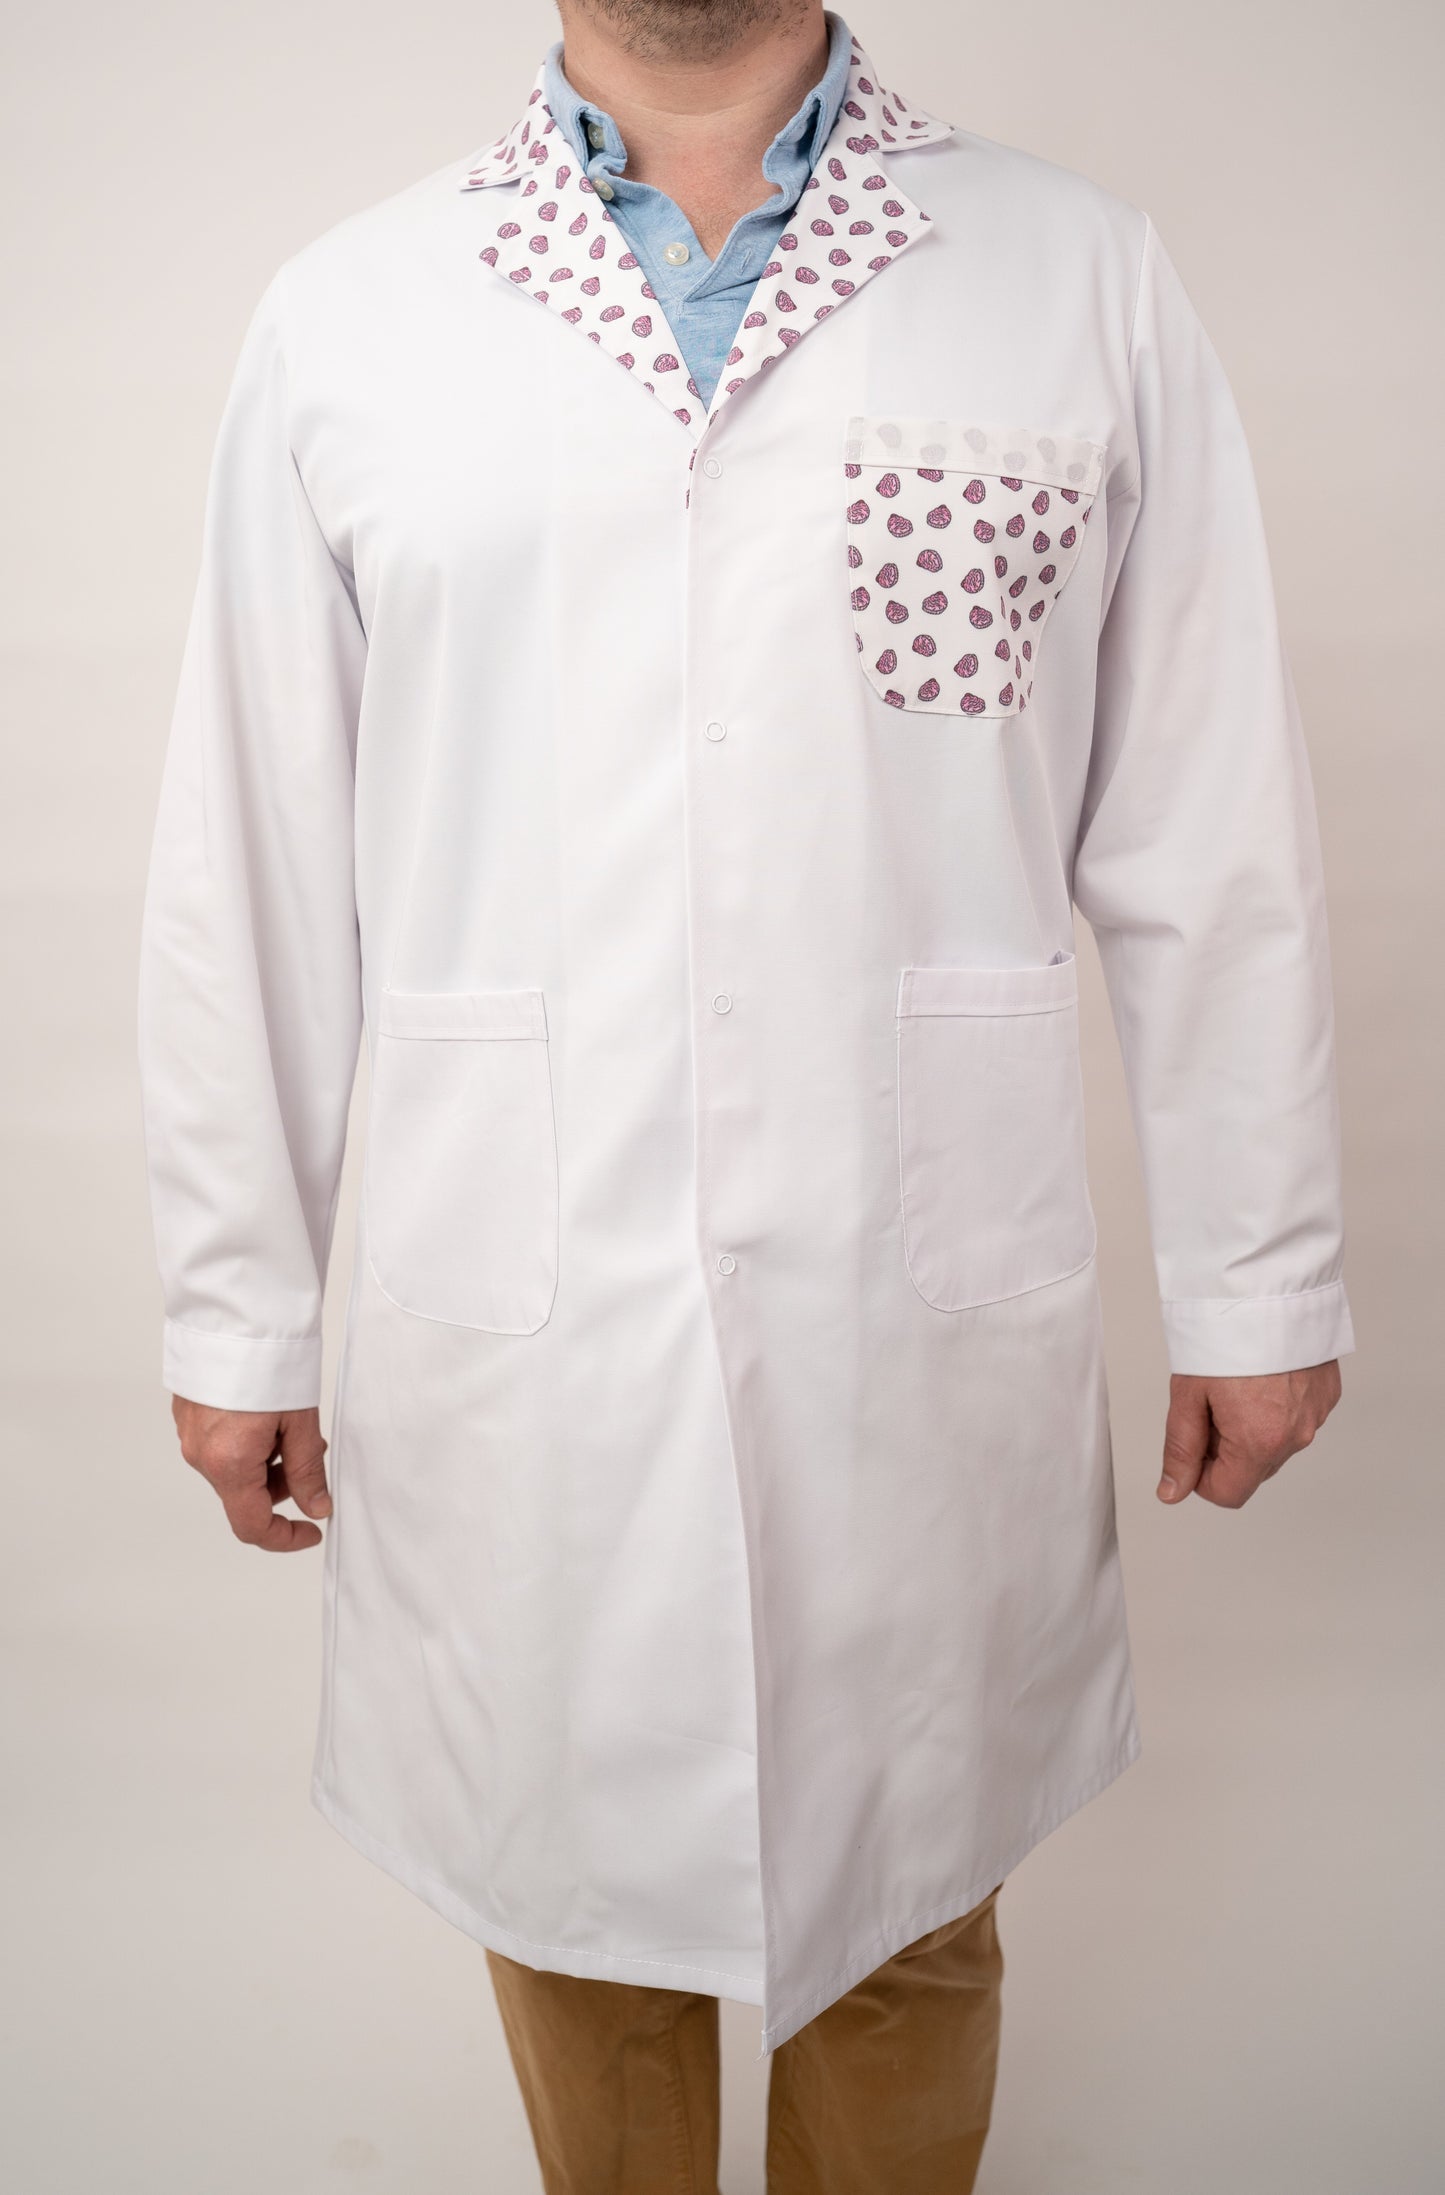 'Brain' lab coat